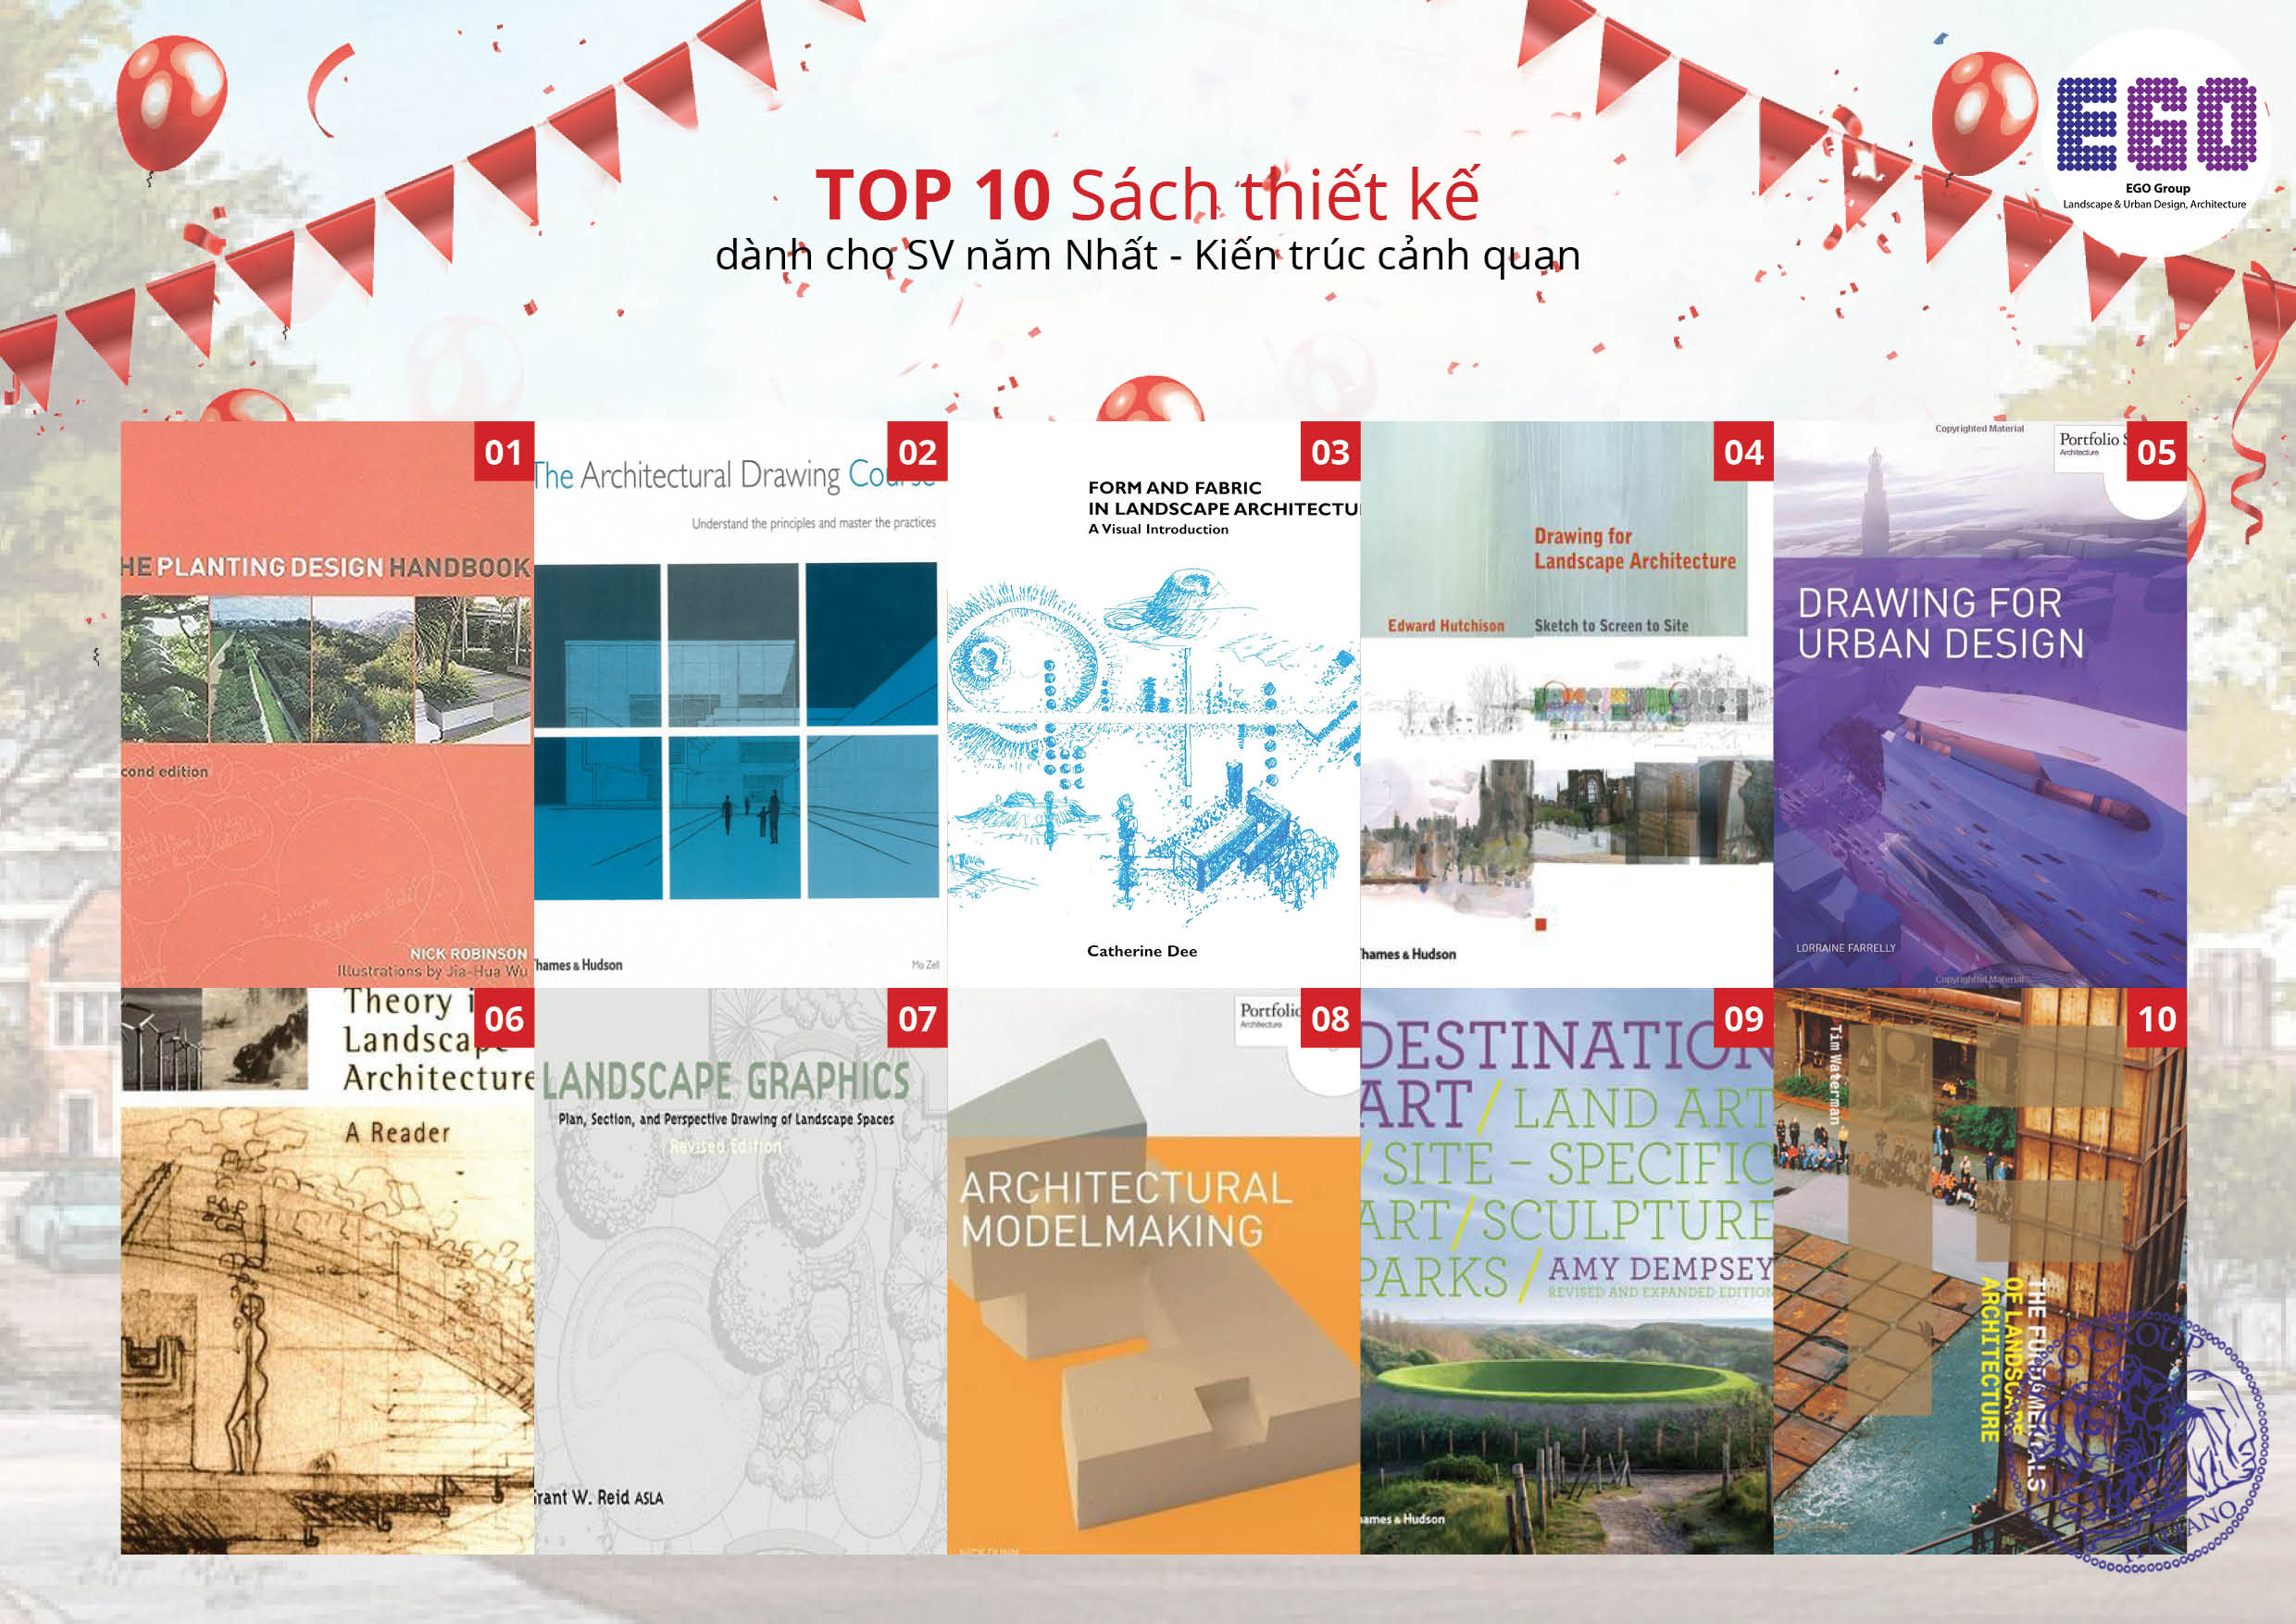 Top 10 những cuốn sách thiết kế dành cho kiến trúc sư cảnh quan (Phần 1)